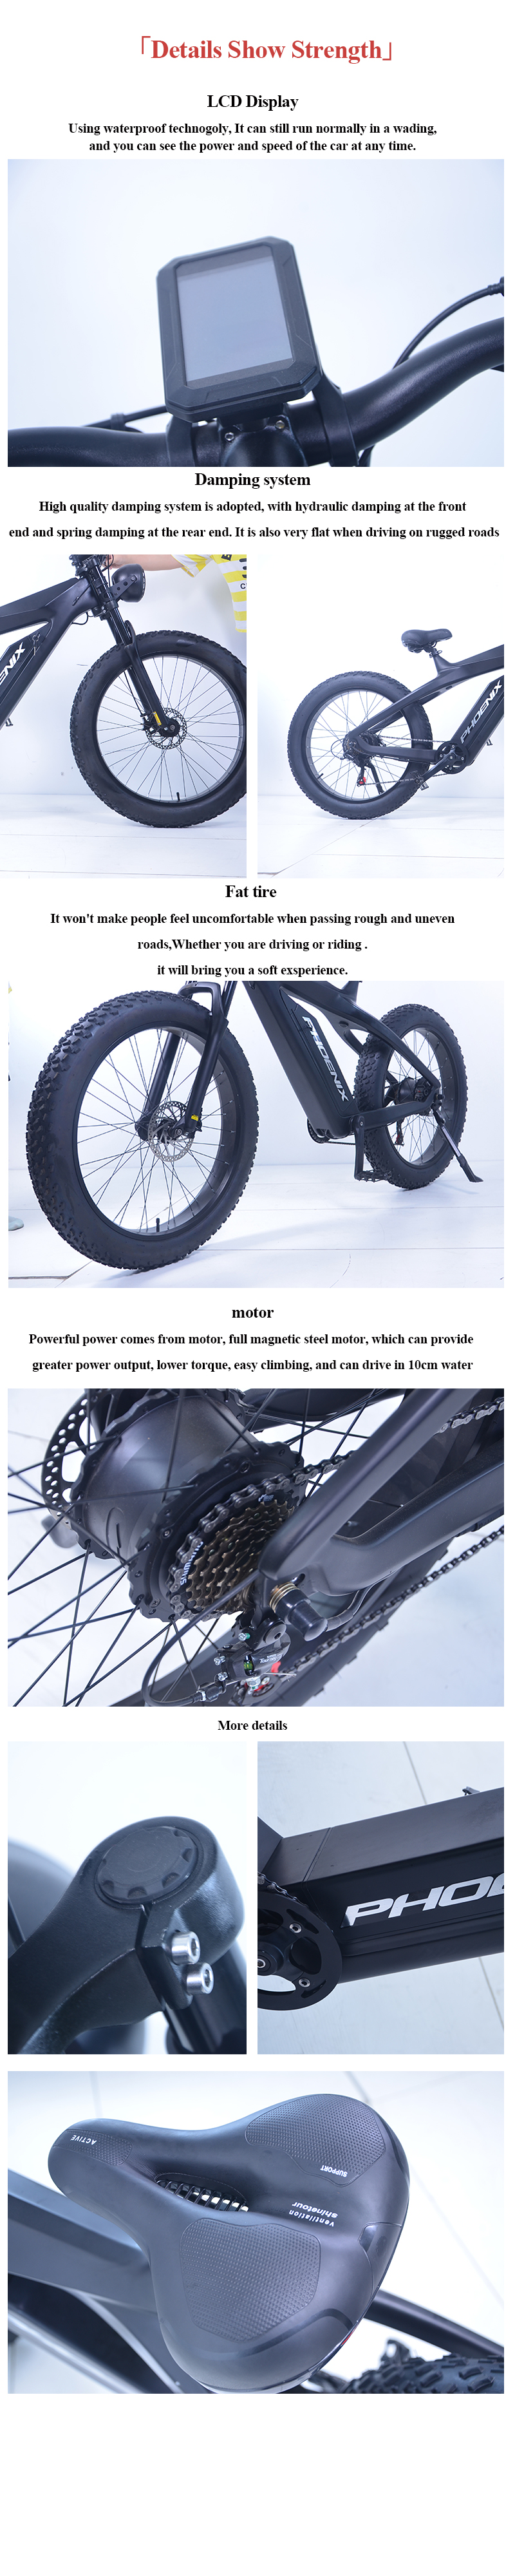 Detalji električnog bicikla za snijeg